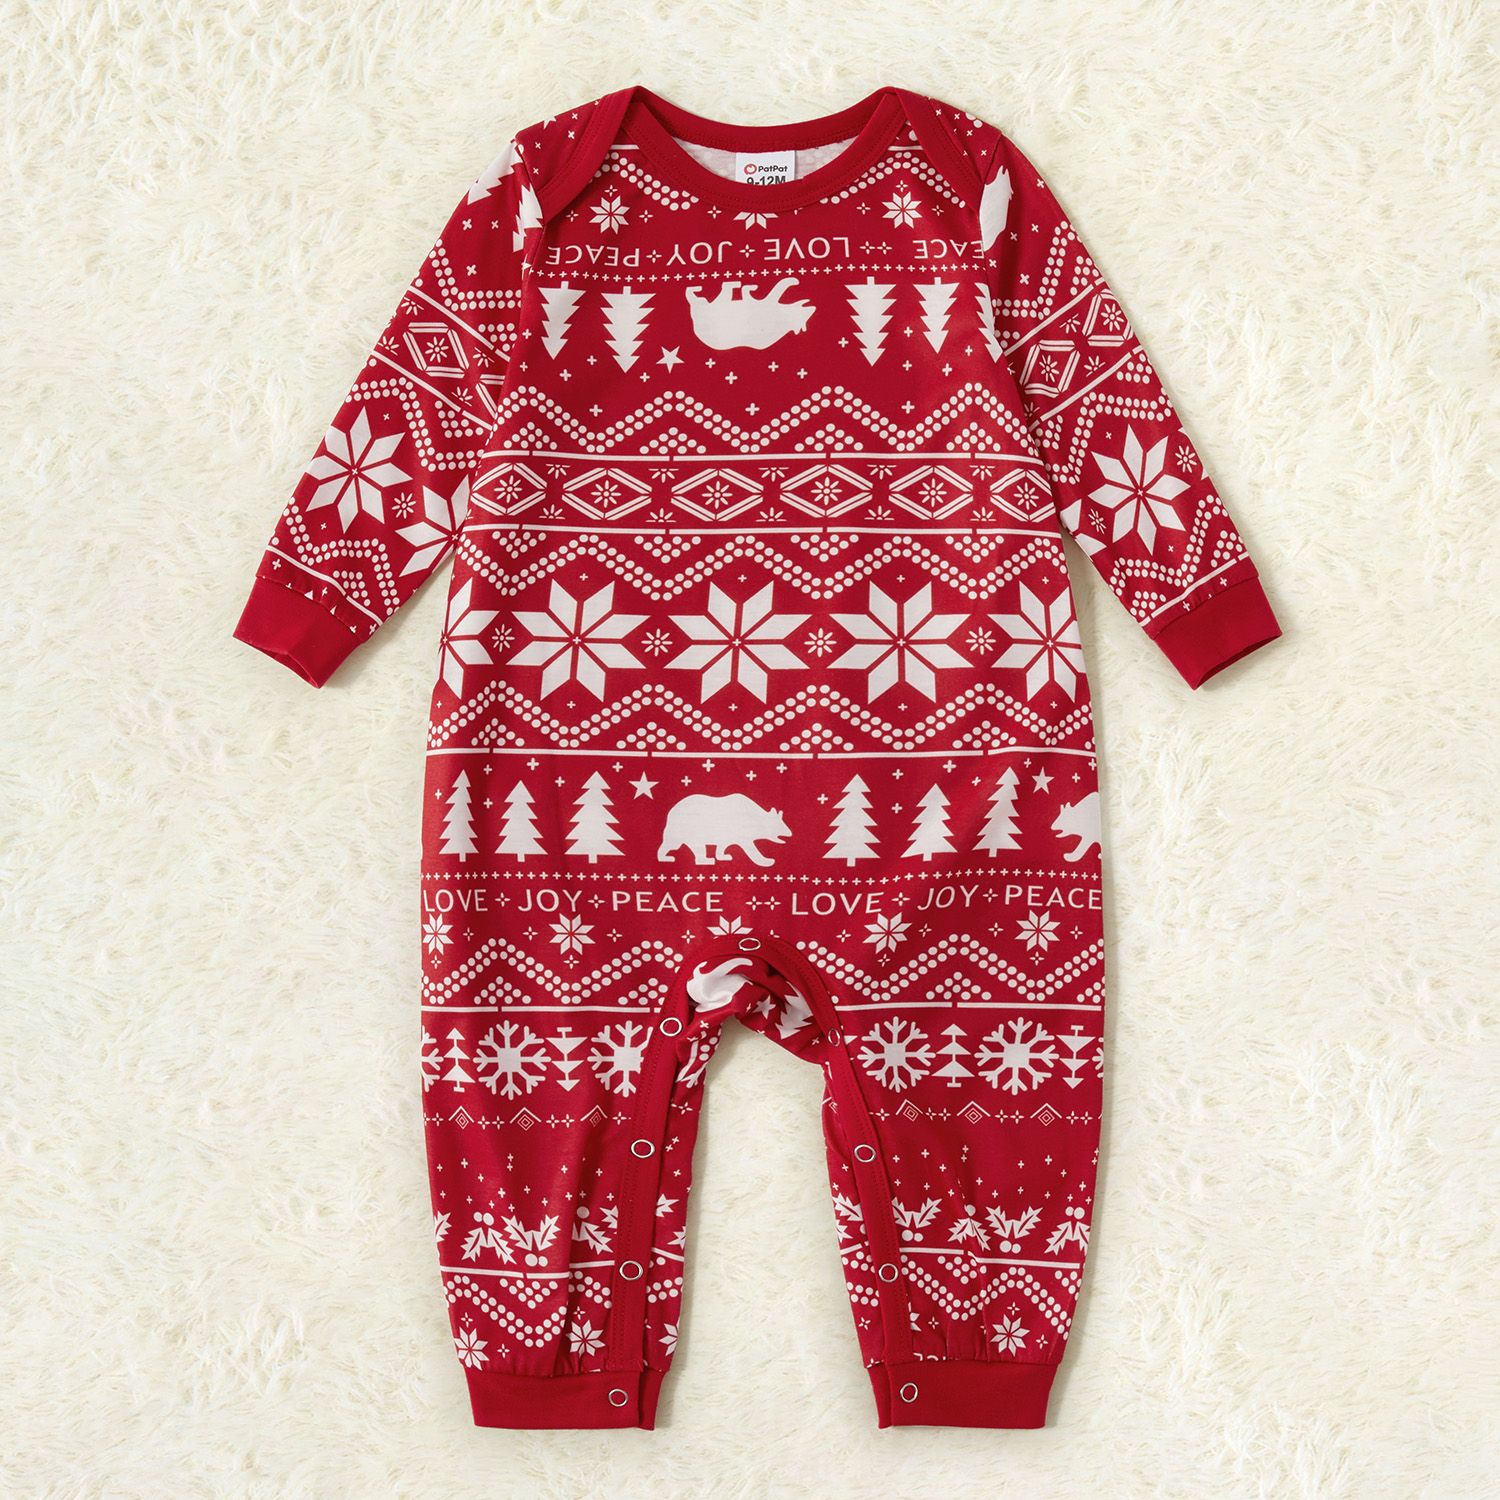 Traditional Christmas Print Family Matching Pajamas Sets (Flame Resistant)